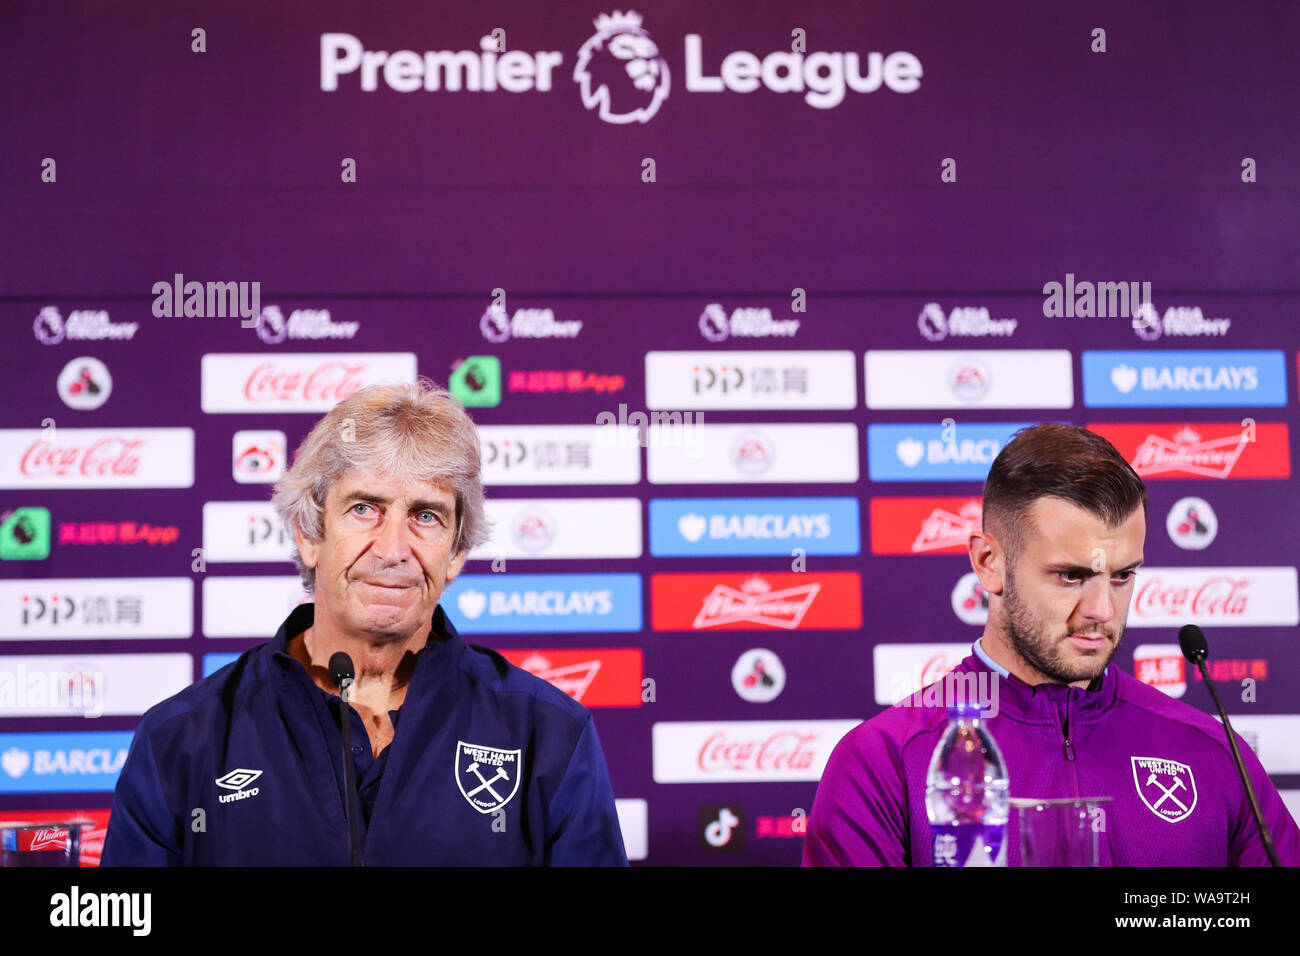 El Manuel Pellegrini, izquierda, y Jack Wilshere del West Ham United F.C. de campeones de la inglesa para asistir a una conferencia de prensa el último matc Fotografía stock -